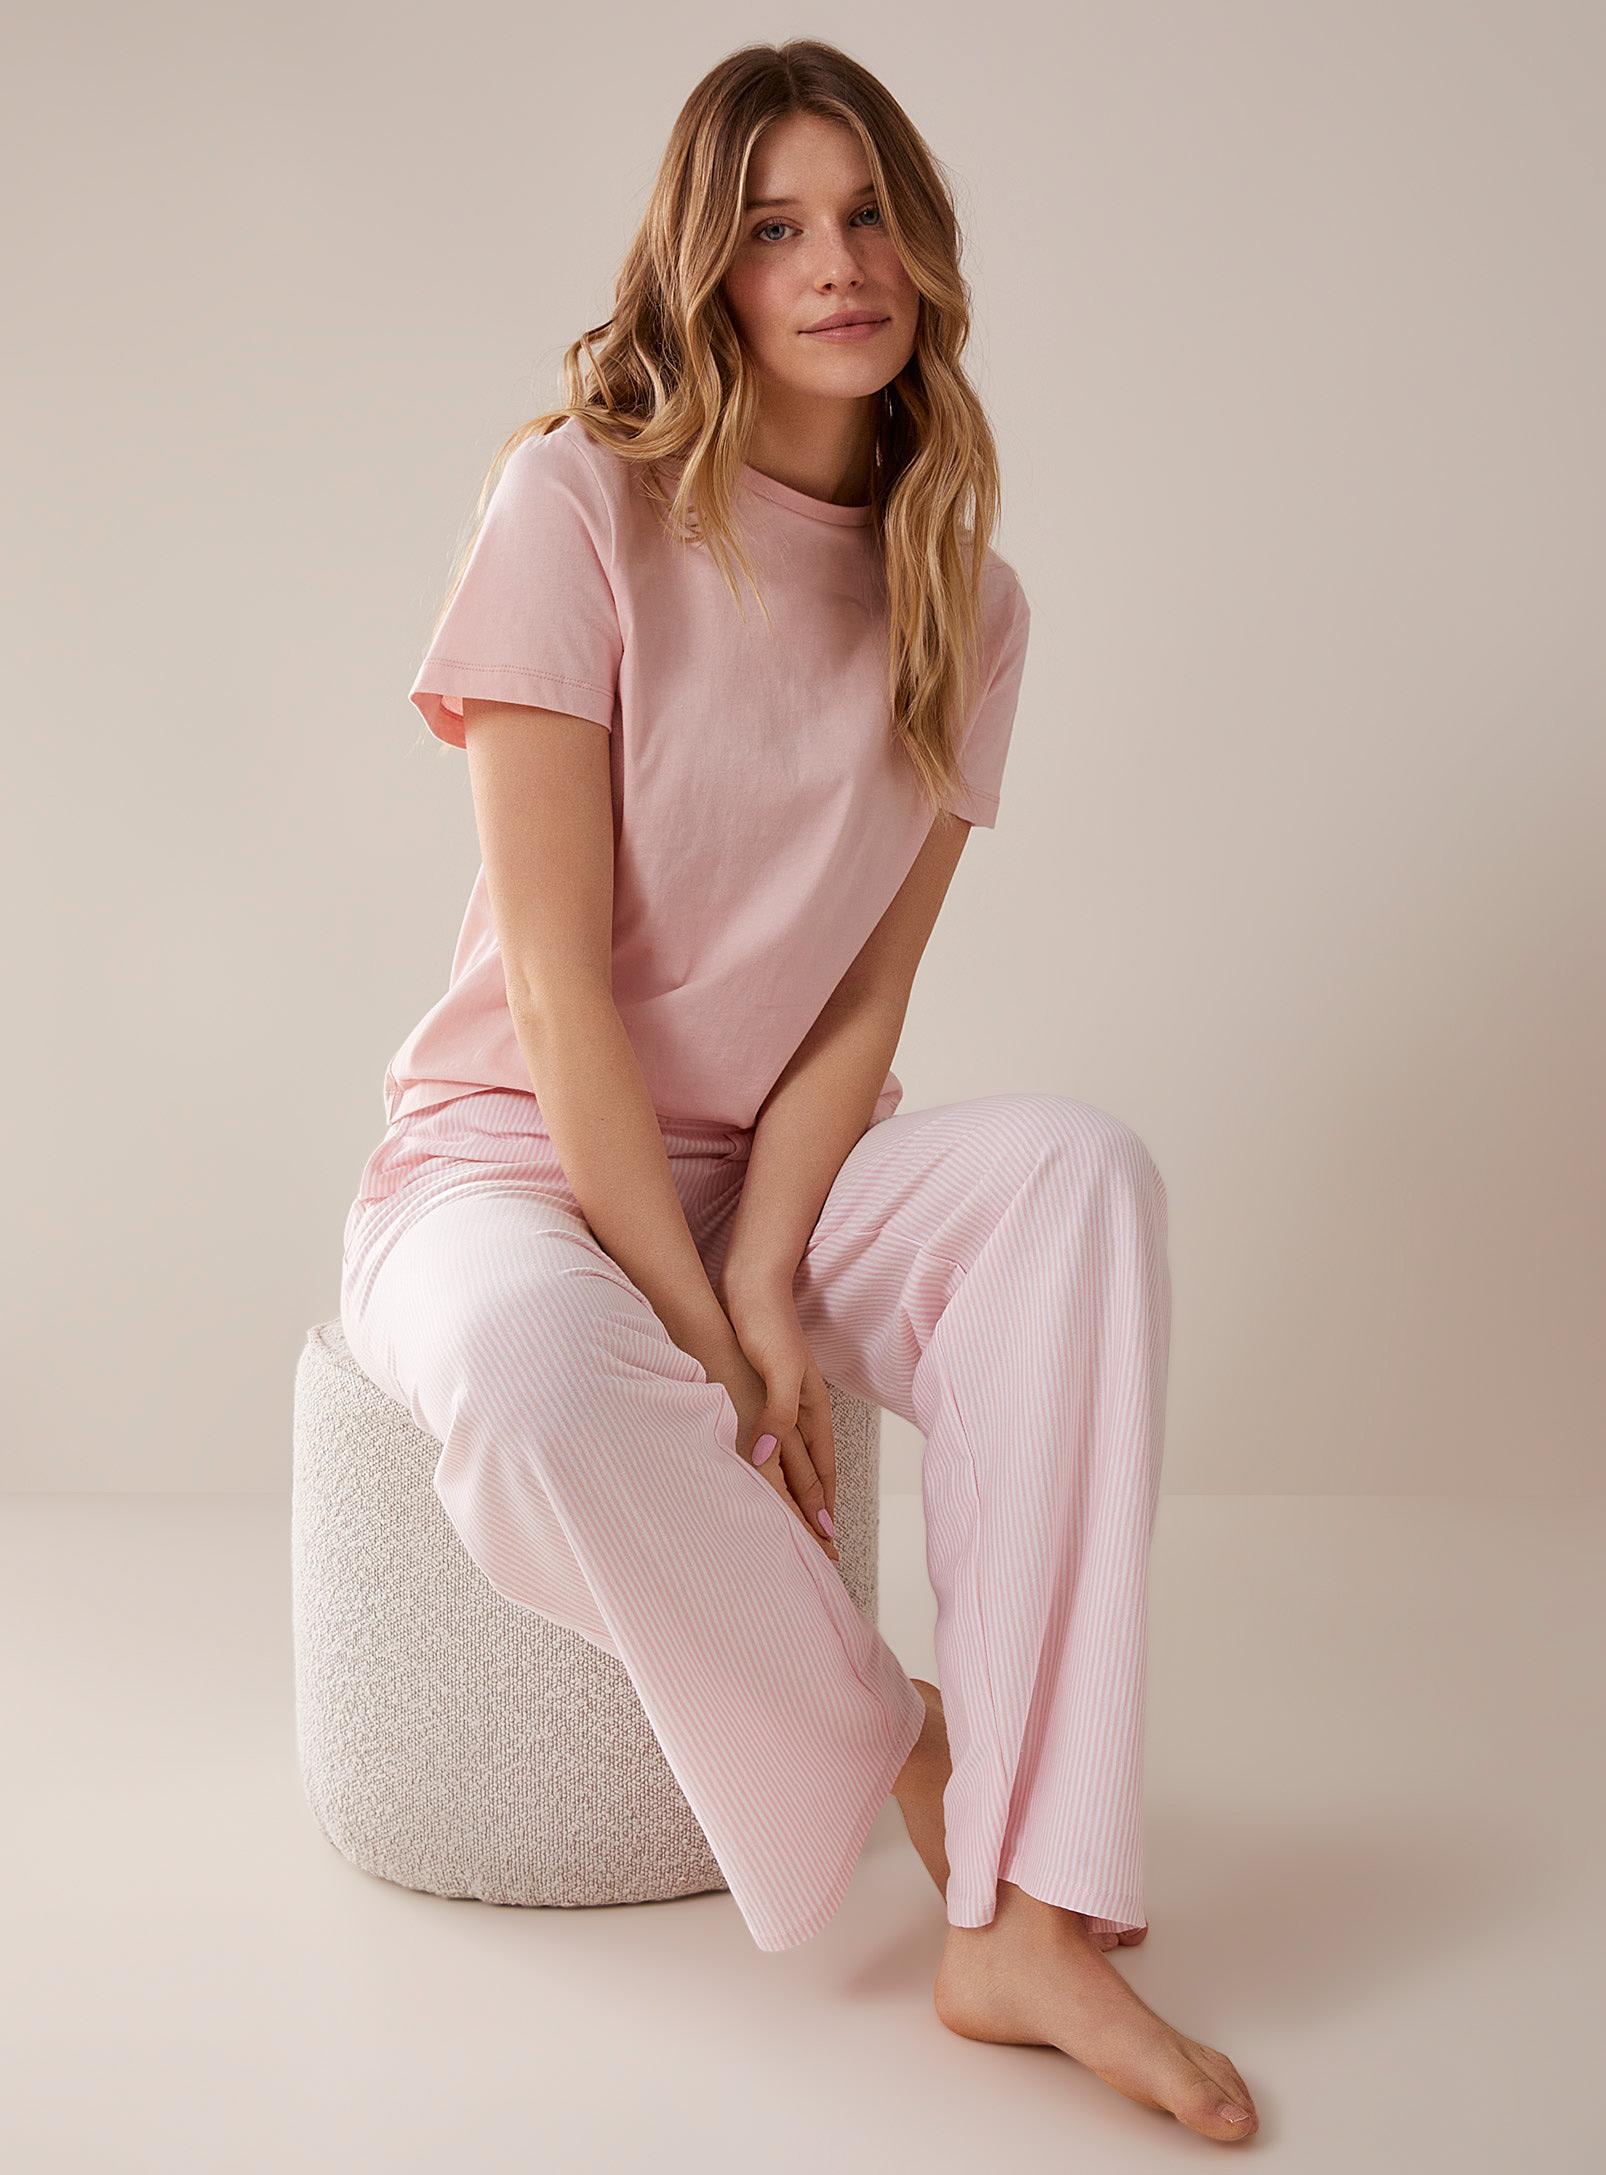 Miiyu Organic Cotton Lounge Pant in Pink